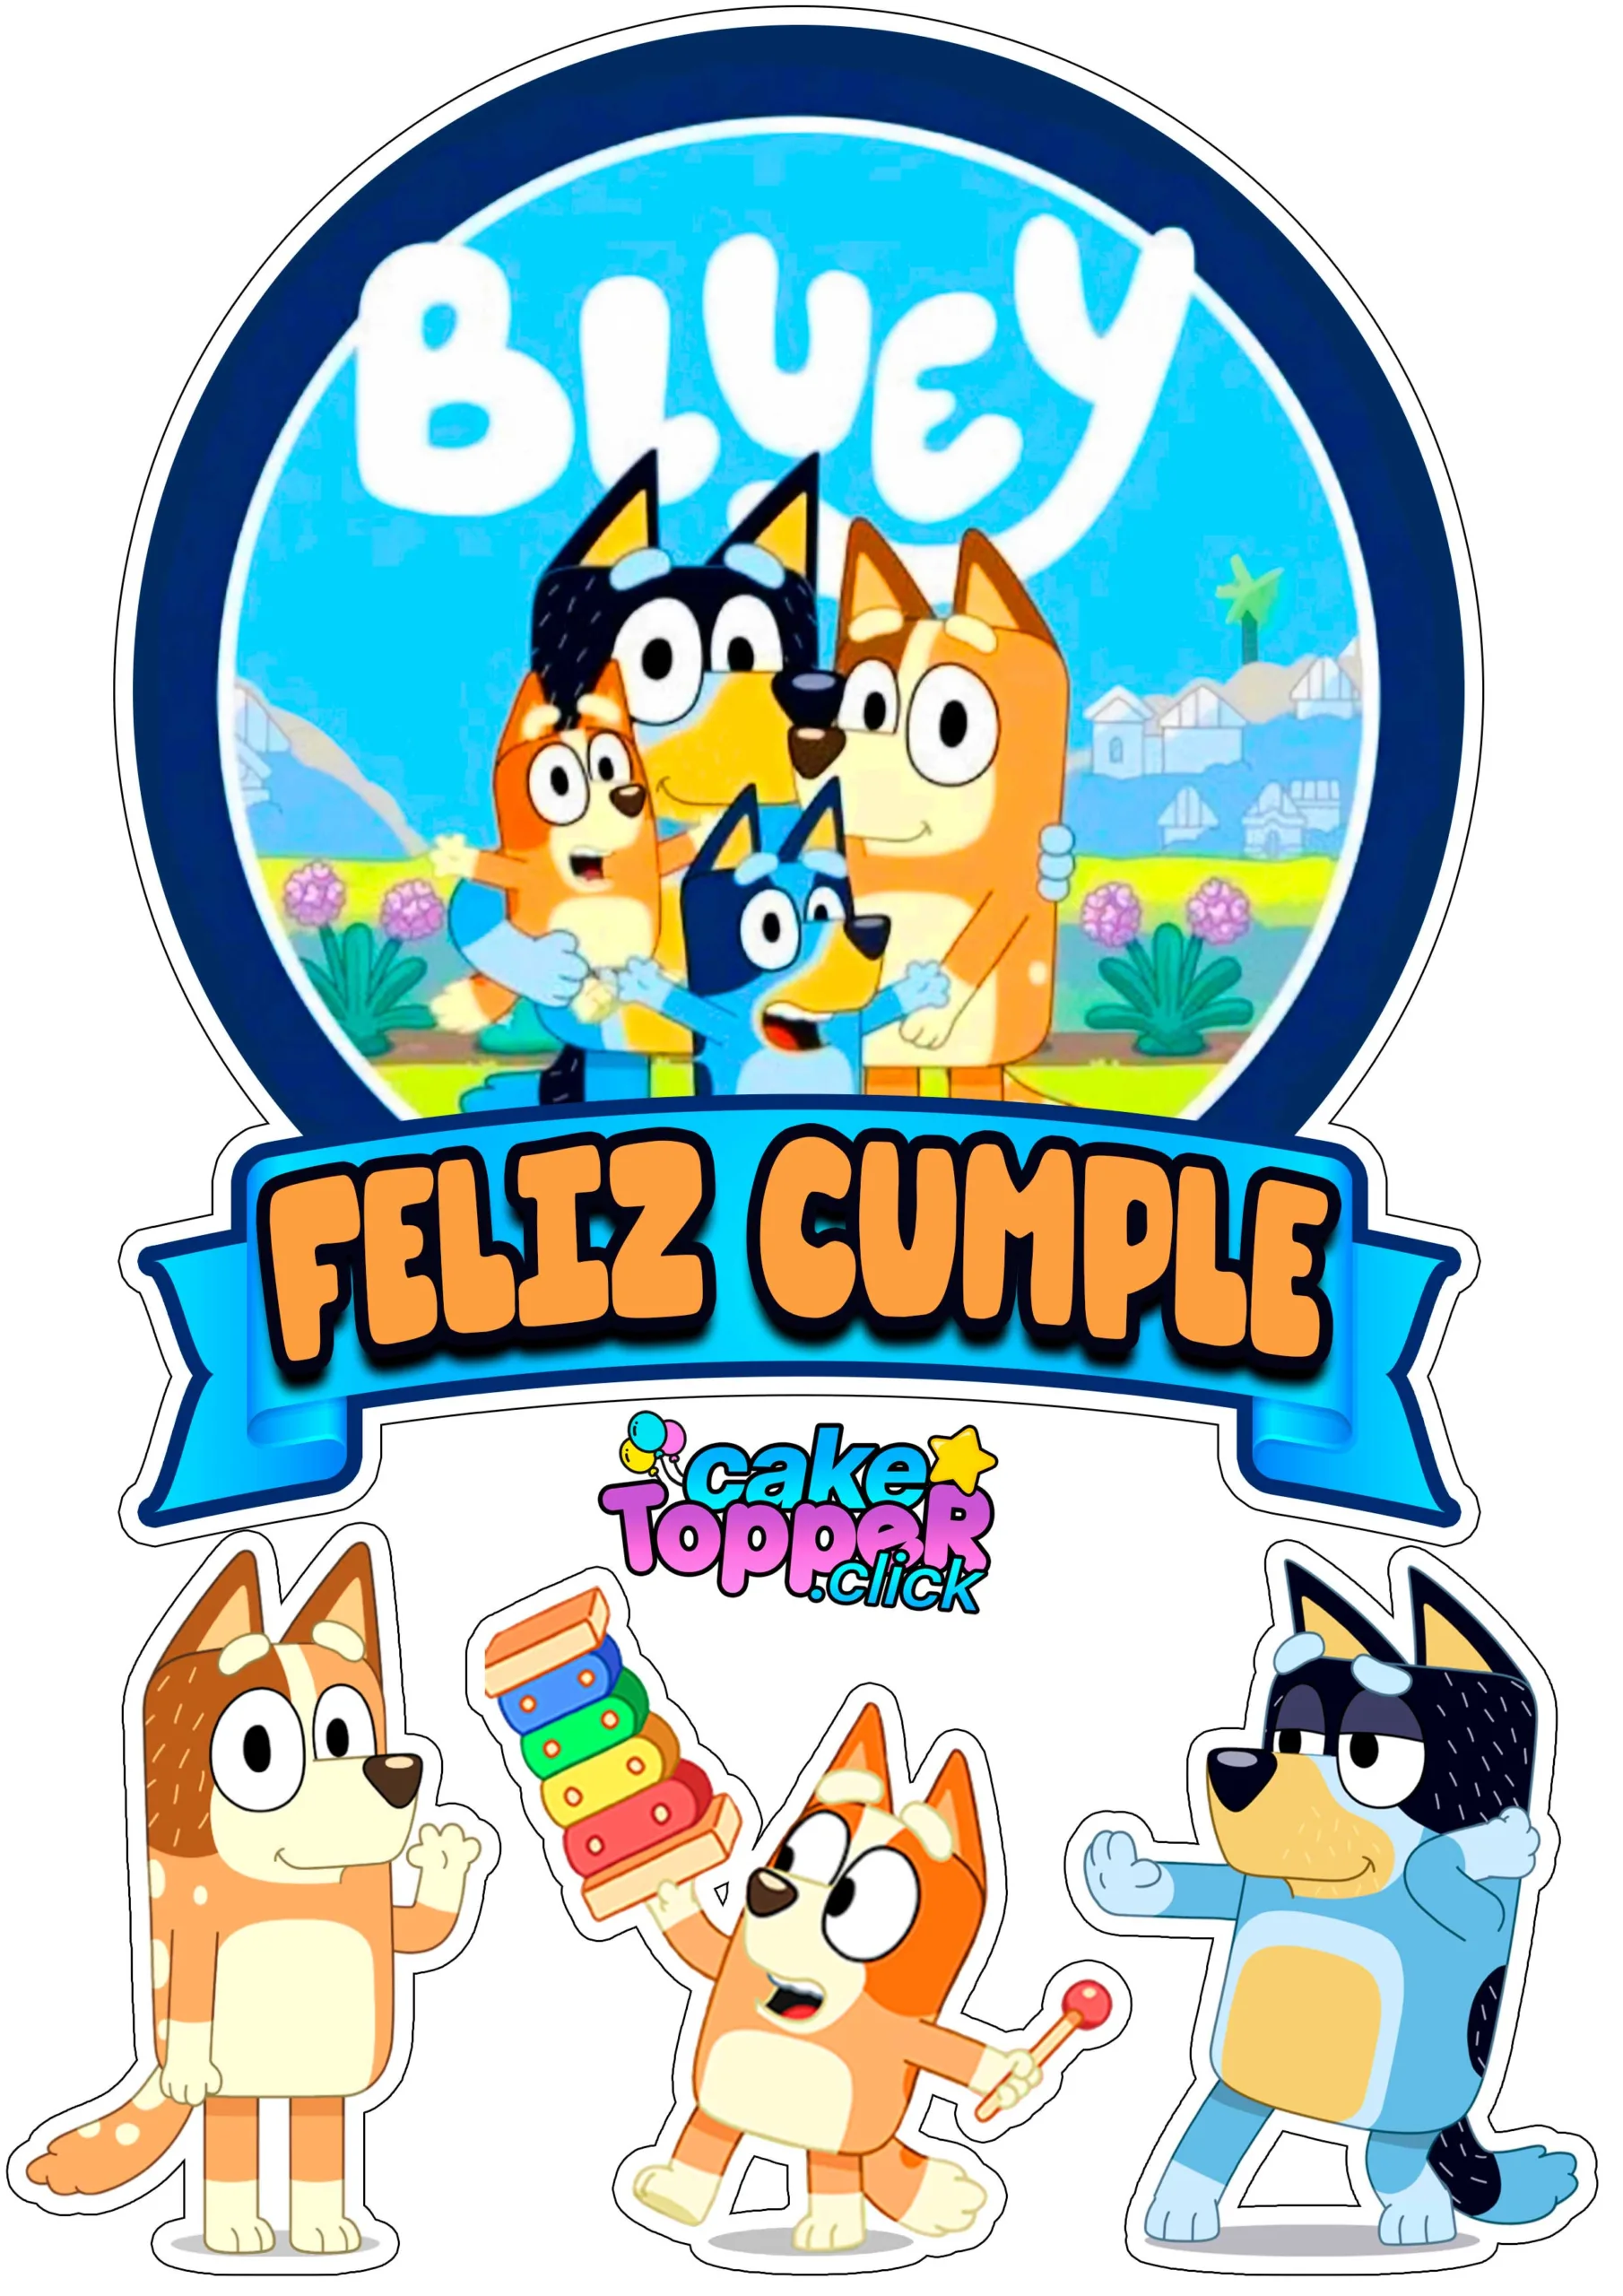 stickers de Bluey  Kits imprimibles para cumpleaños, Fiesta de